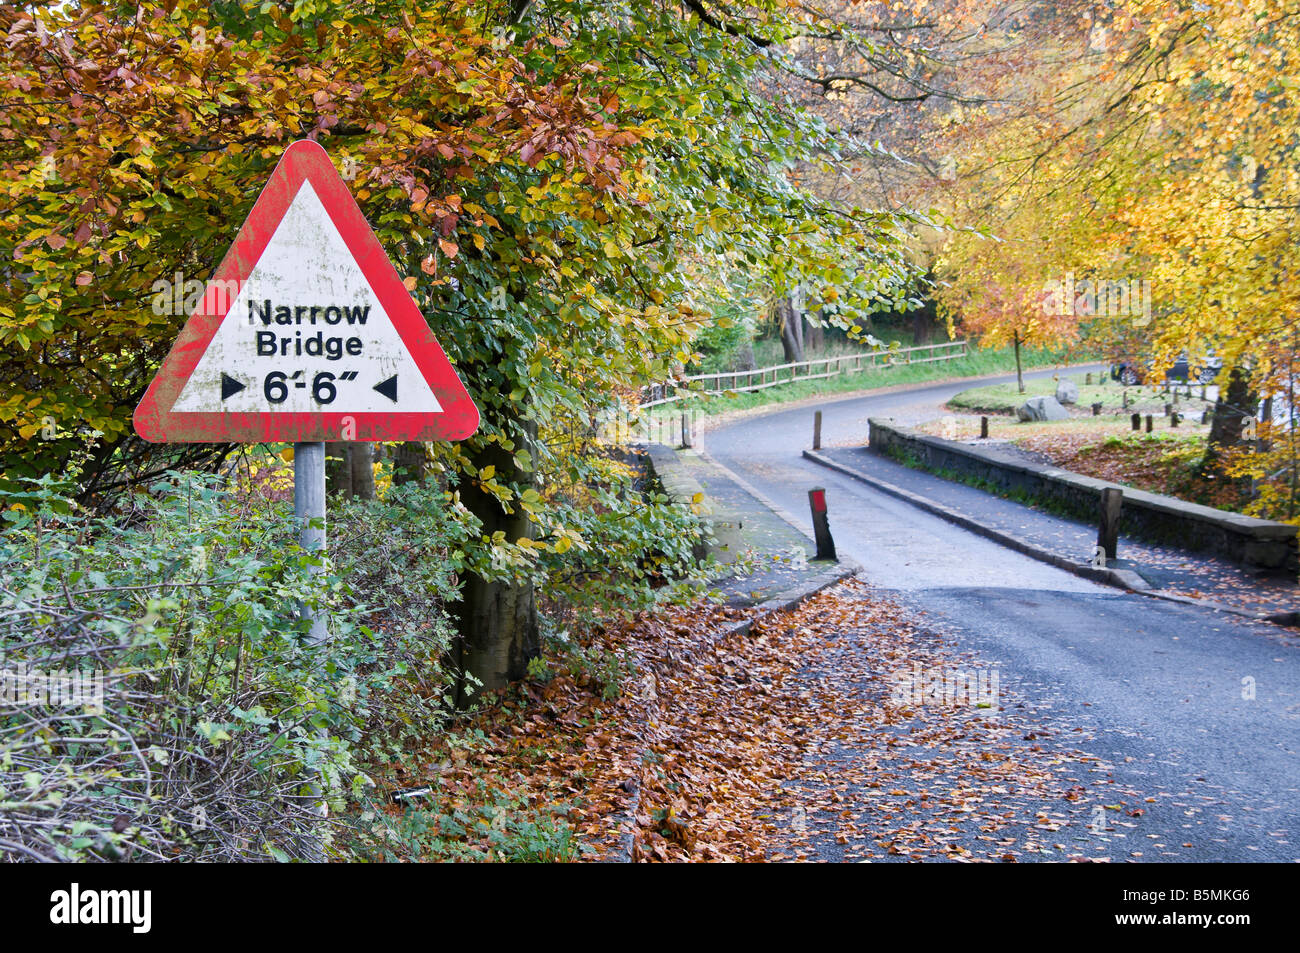 Narrow bridge road sign, with 7.5 ton/tonne limit.  Autumn colours Stock Photo